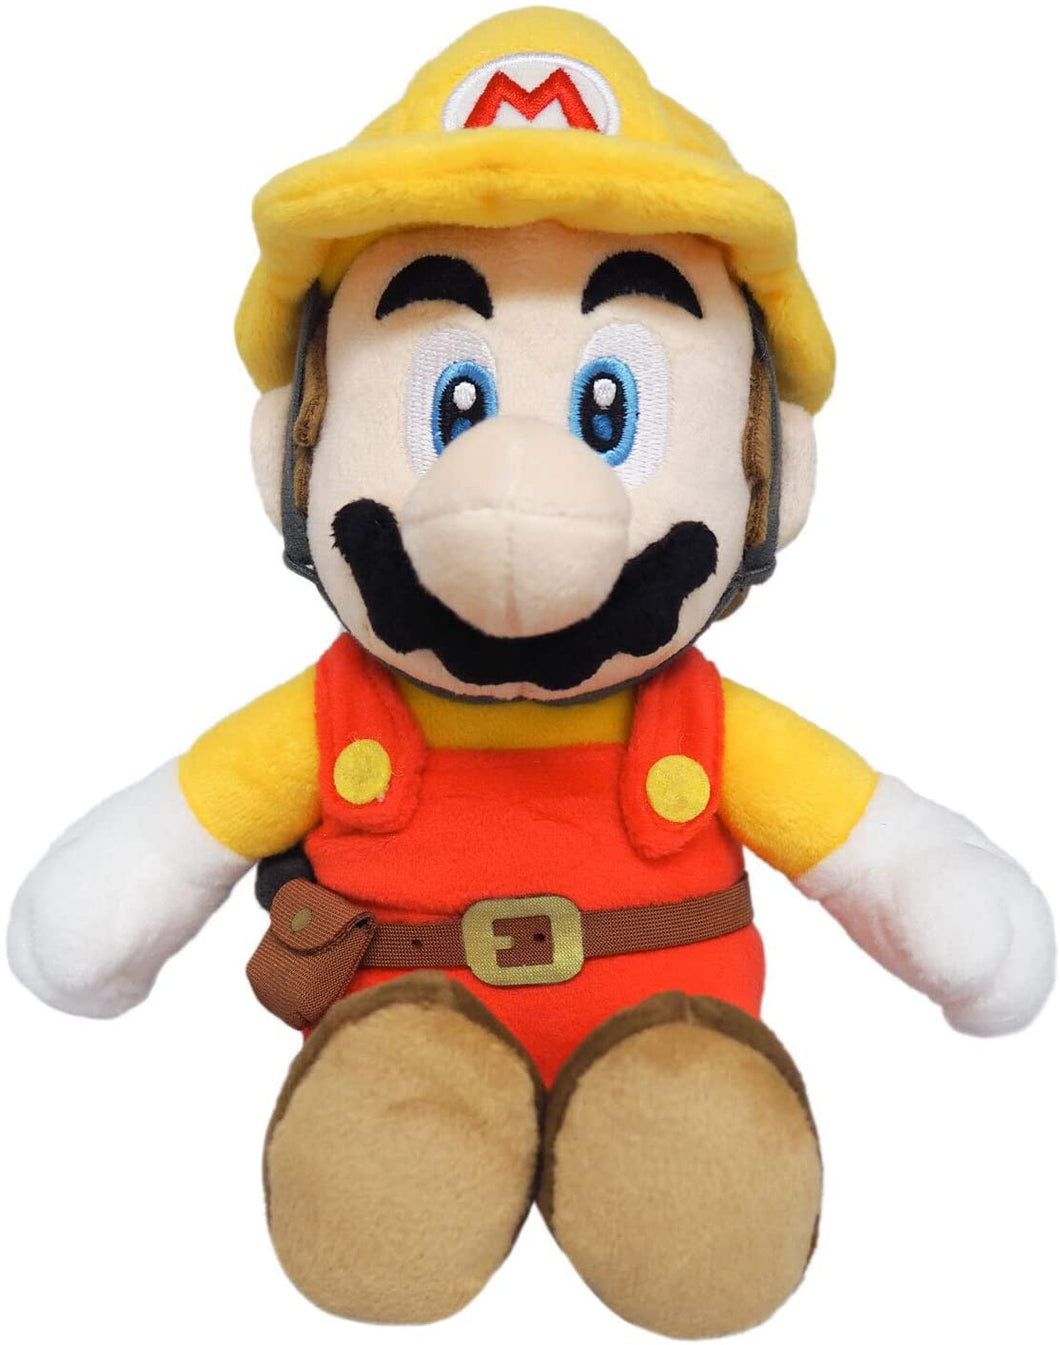 Super Mario Maker 2 Builder Mario Plush 9.5